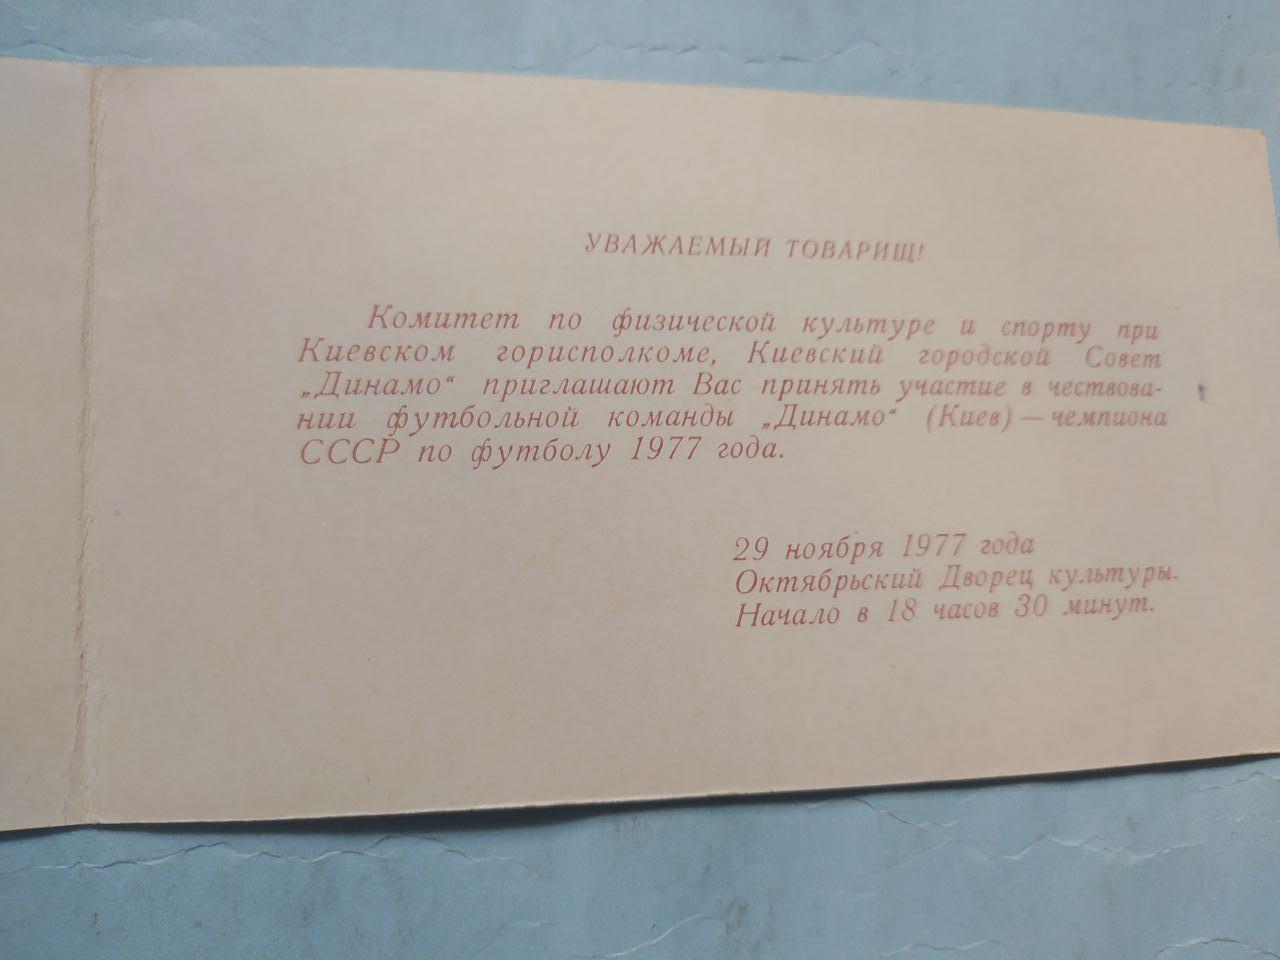 Динамо Киев чемпион СССР футбол 1977 приглашение - 29.11.1977 с автографами 2